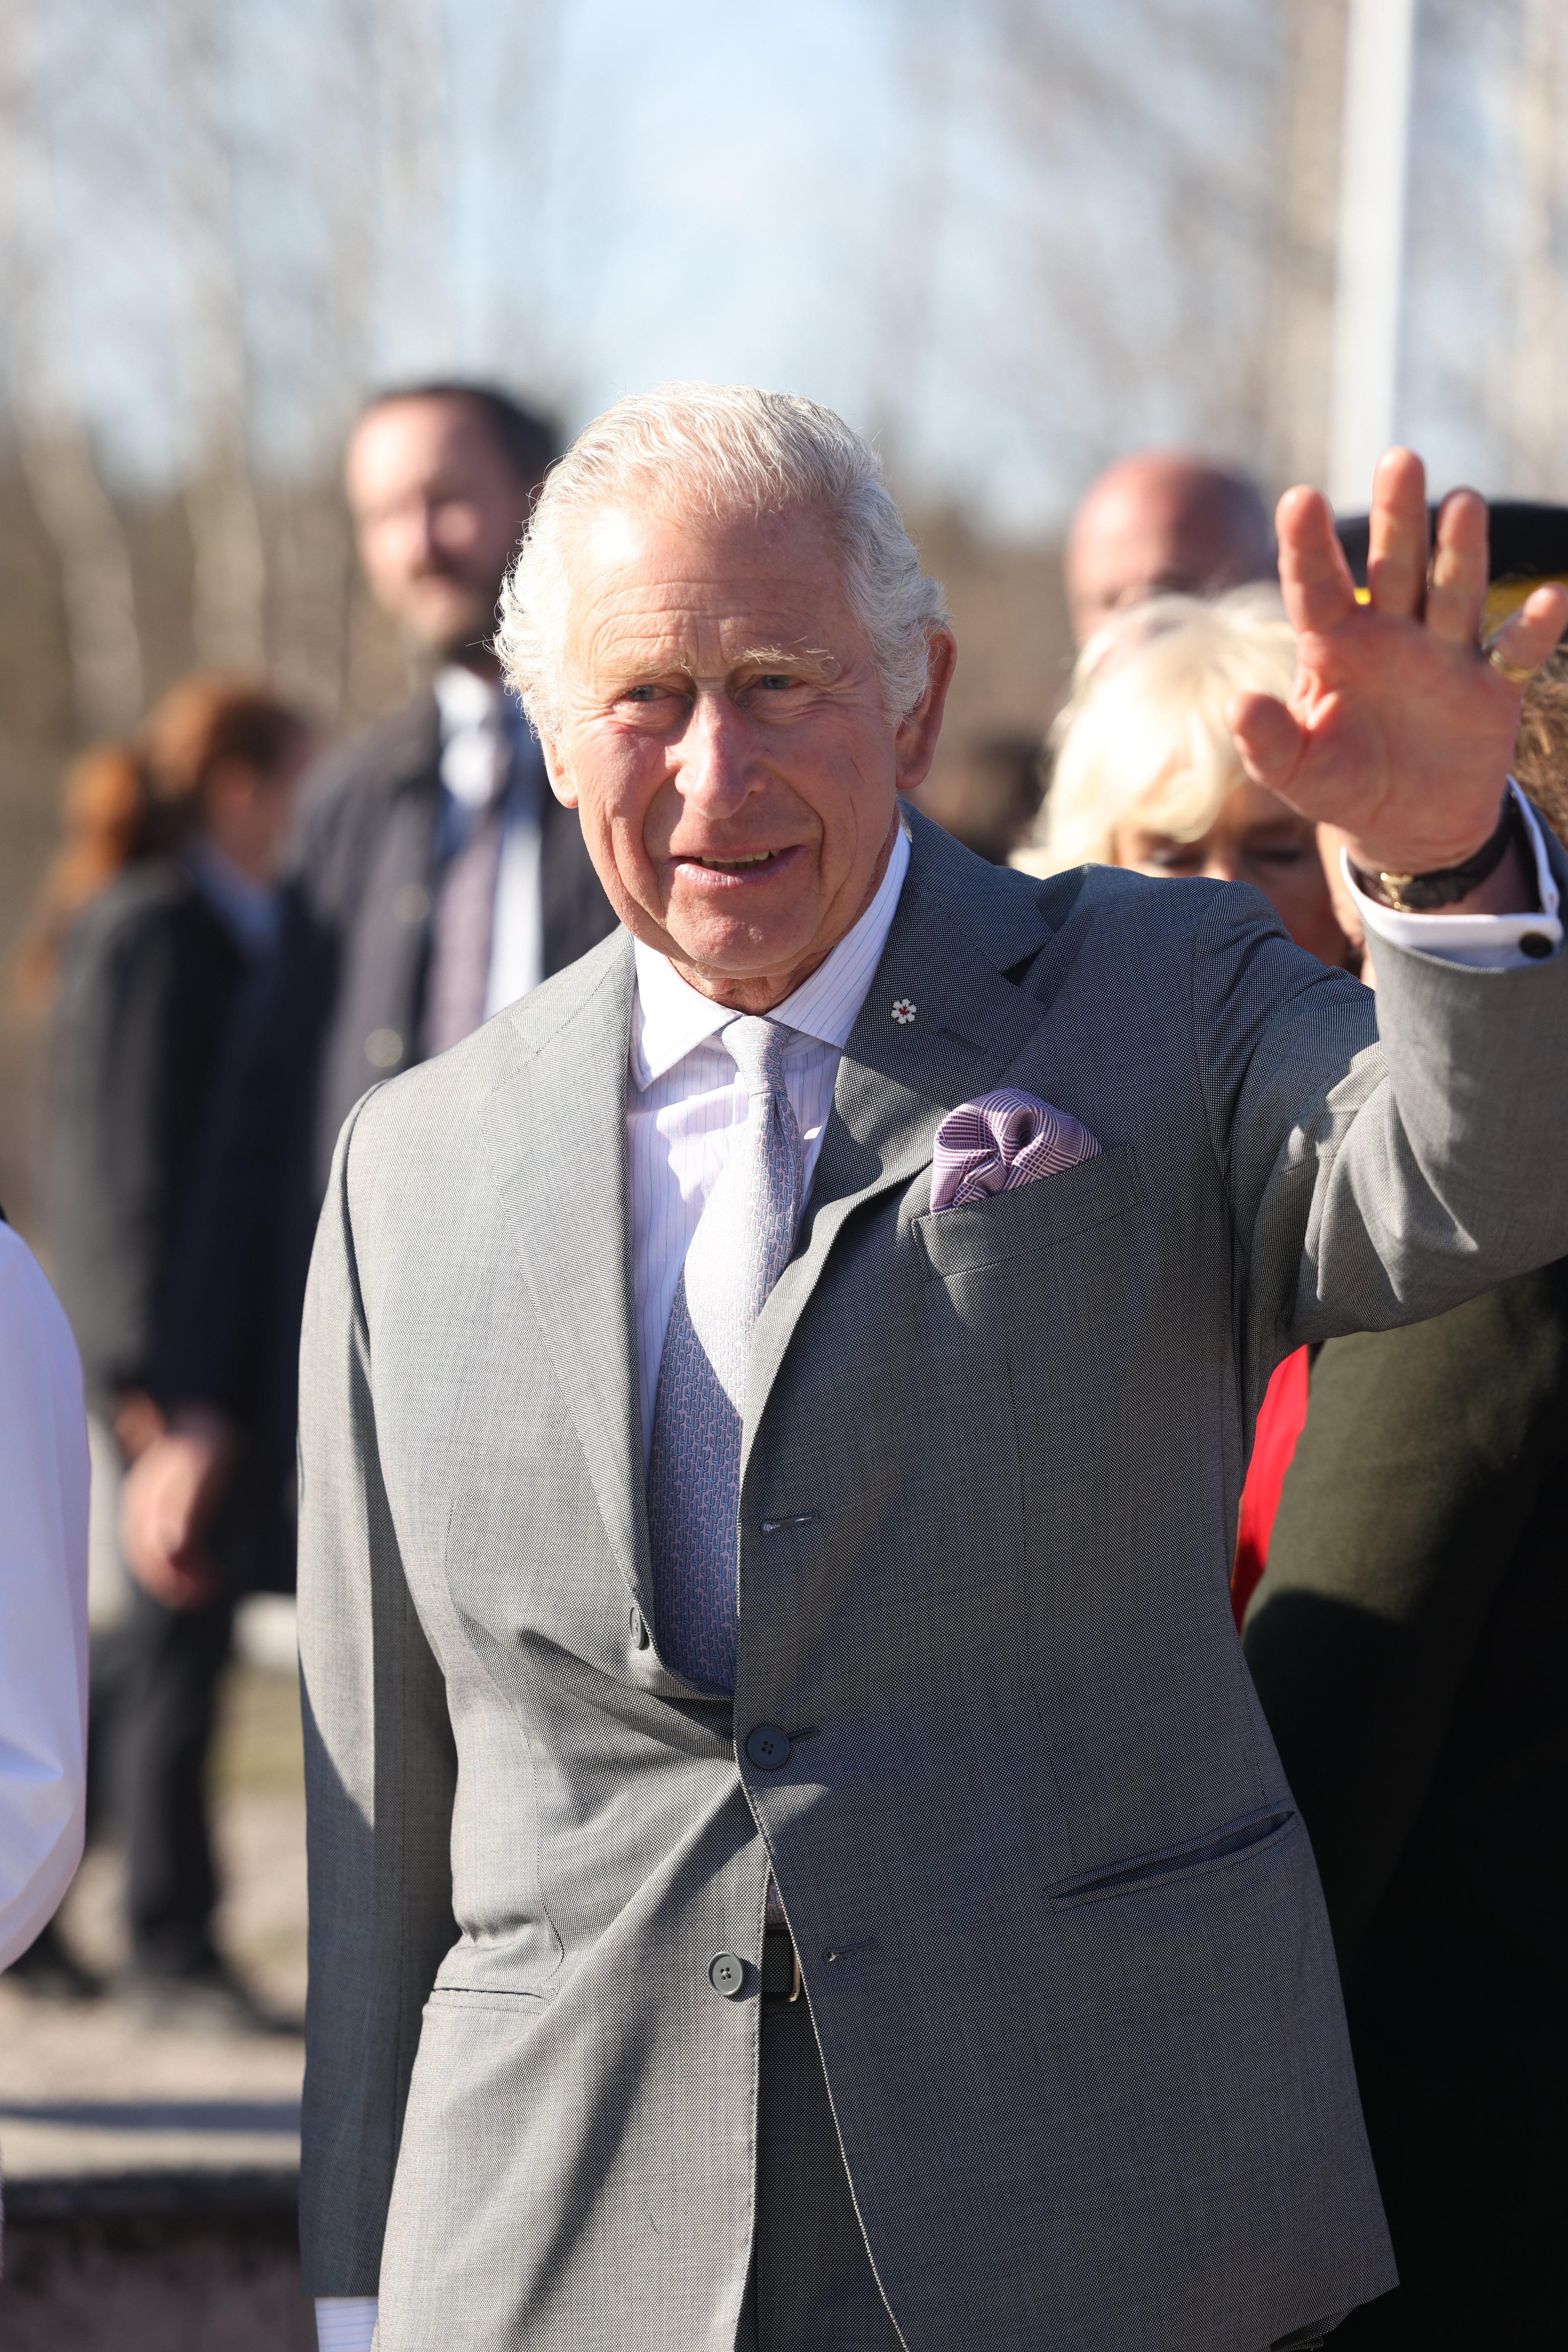 El príncipe Charles, ahora rey, en una Ceremonia del Jubileo de Platino en el Círculo Ceremonial, el 19 de mayo de 2022 en Yellowknife, Canadá. | Foto: Getty Images